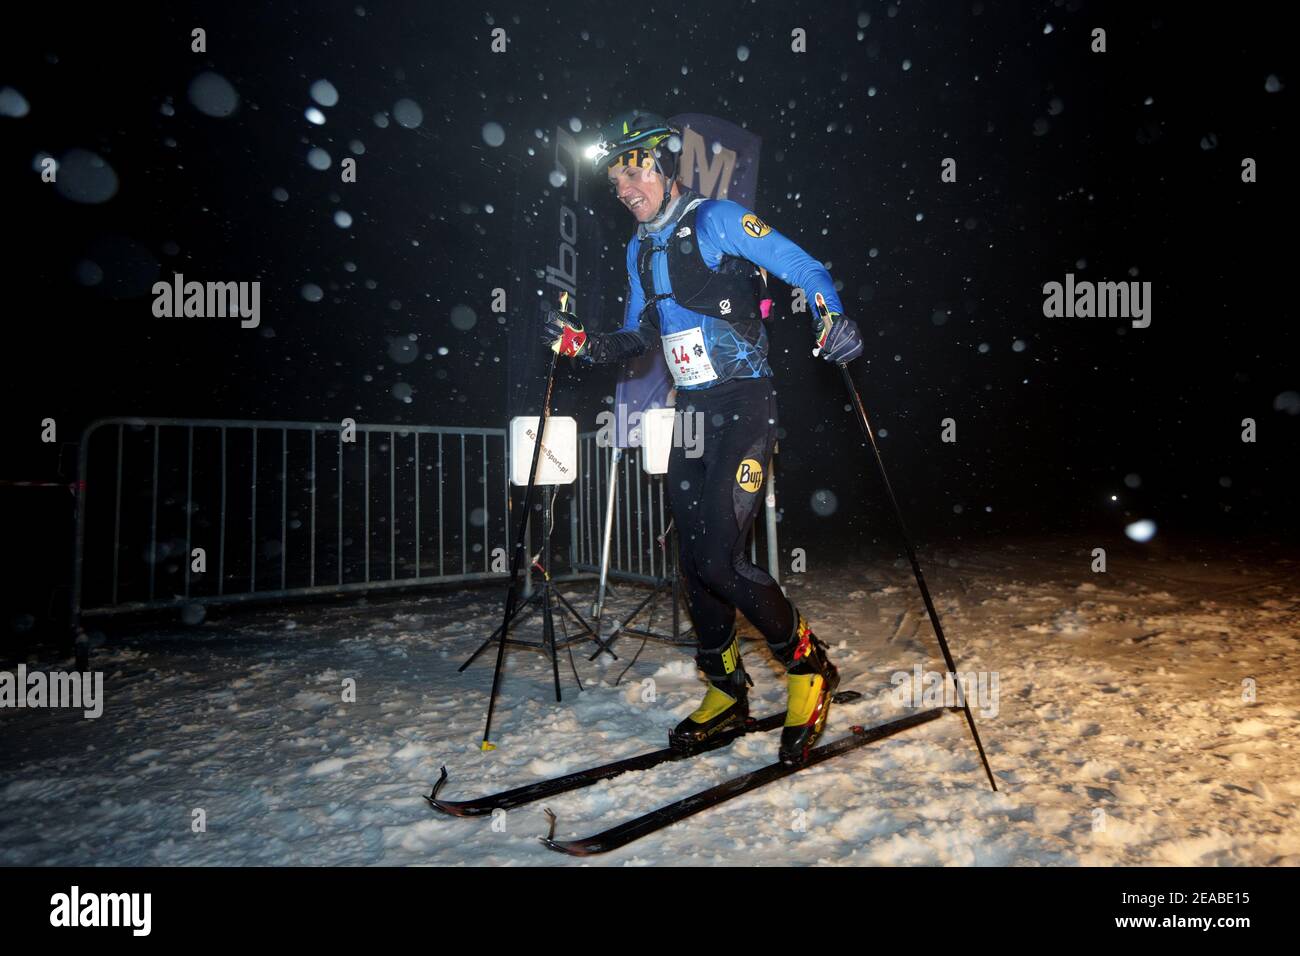 Szczyrk, Skrzyczne, Polonia - 6 de febrero de 2021: Copa Polaca en Alta Montaña esquí Kuby Soinskiego - Noche vertical raza. Exhaustos competidores en el Foto de stock